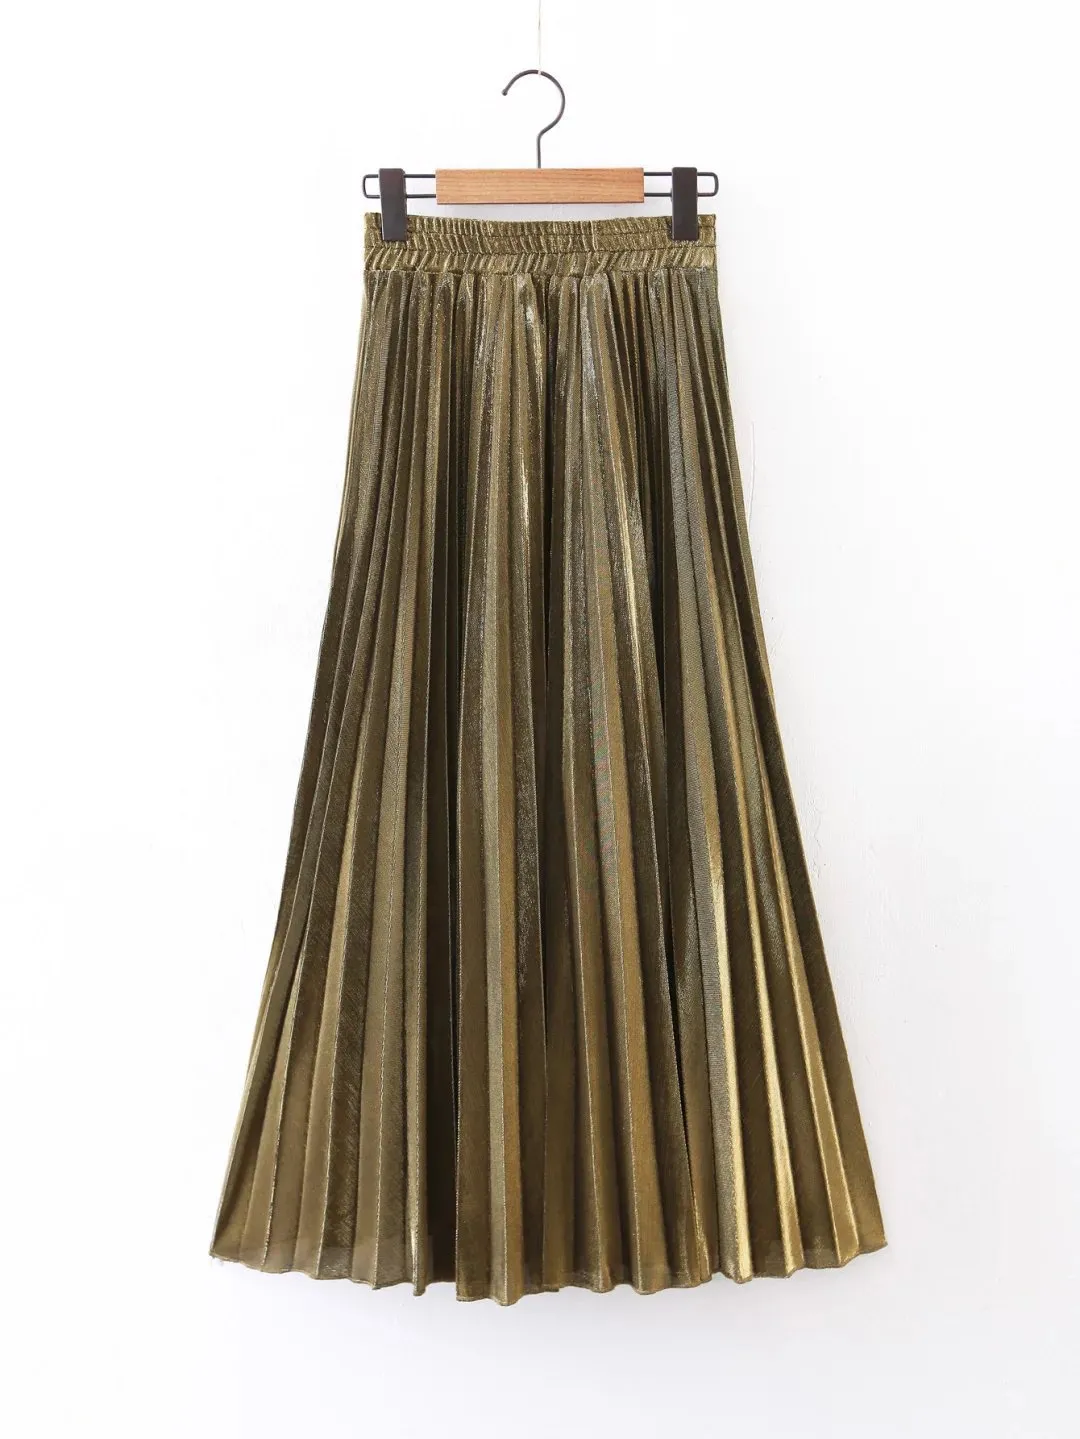 ファッションゴールドスカート弾性ウエストシルバーロング2017春夏のドレスプリーツスカート最高品質安いビーチドレスハイウエスト